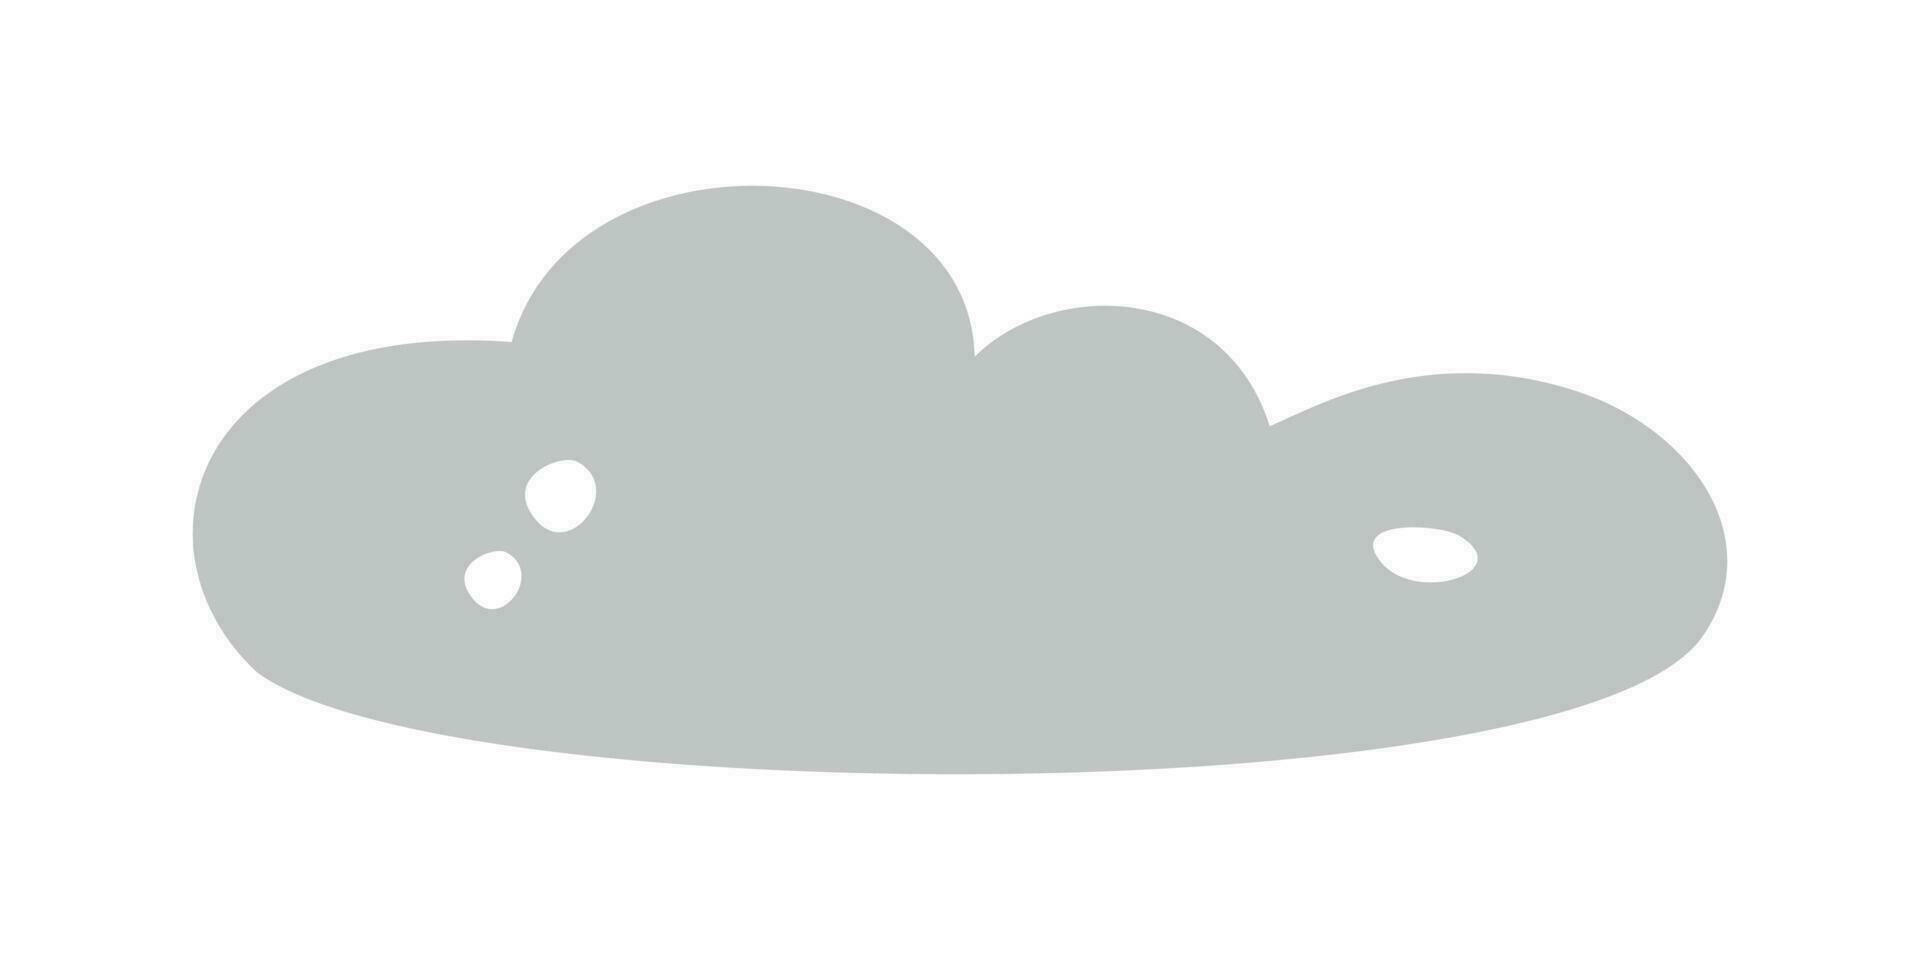 plat vecteur silhouette illustration de nuage